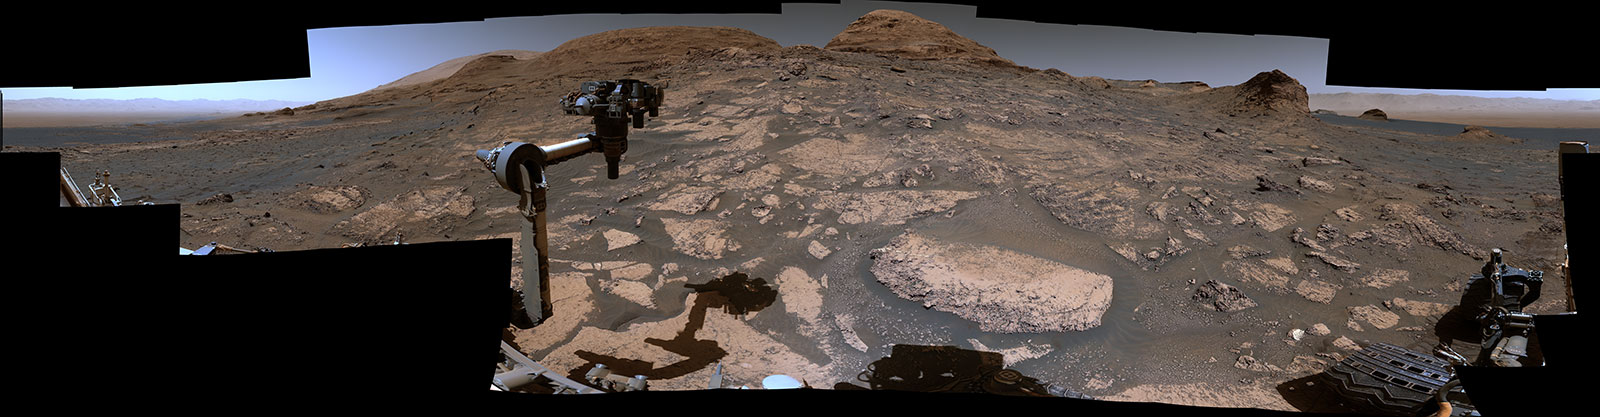 Video rover Curiosity của NASA cho thấy một cái nhìn toàn cảnh mới về sao Hỏa